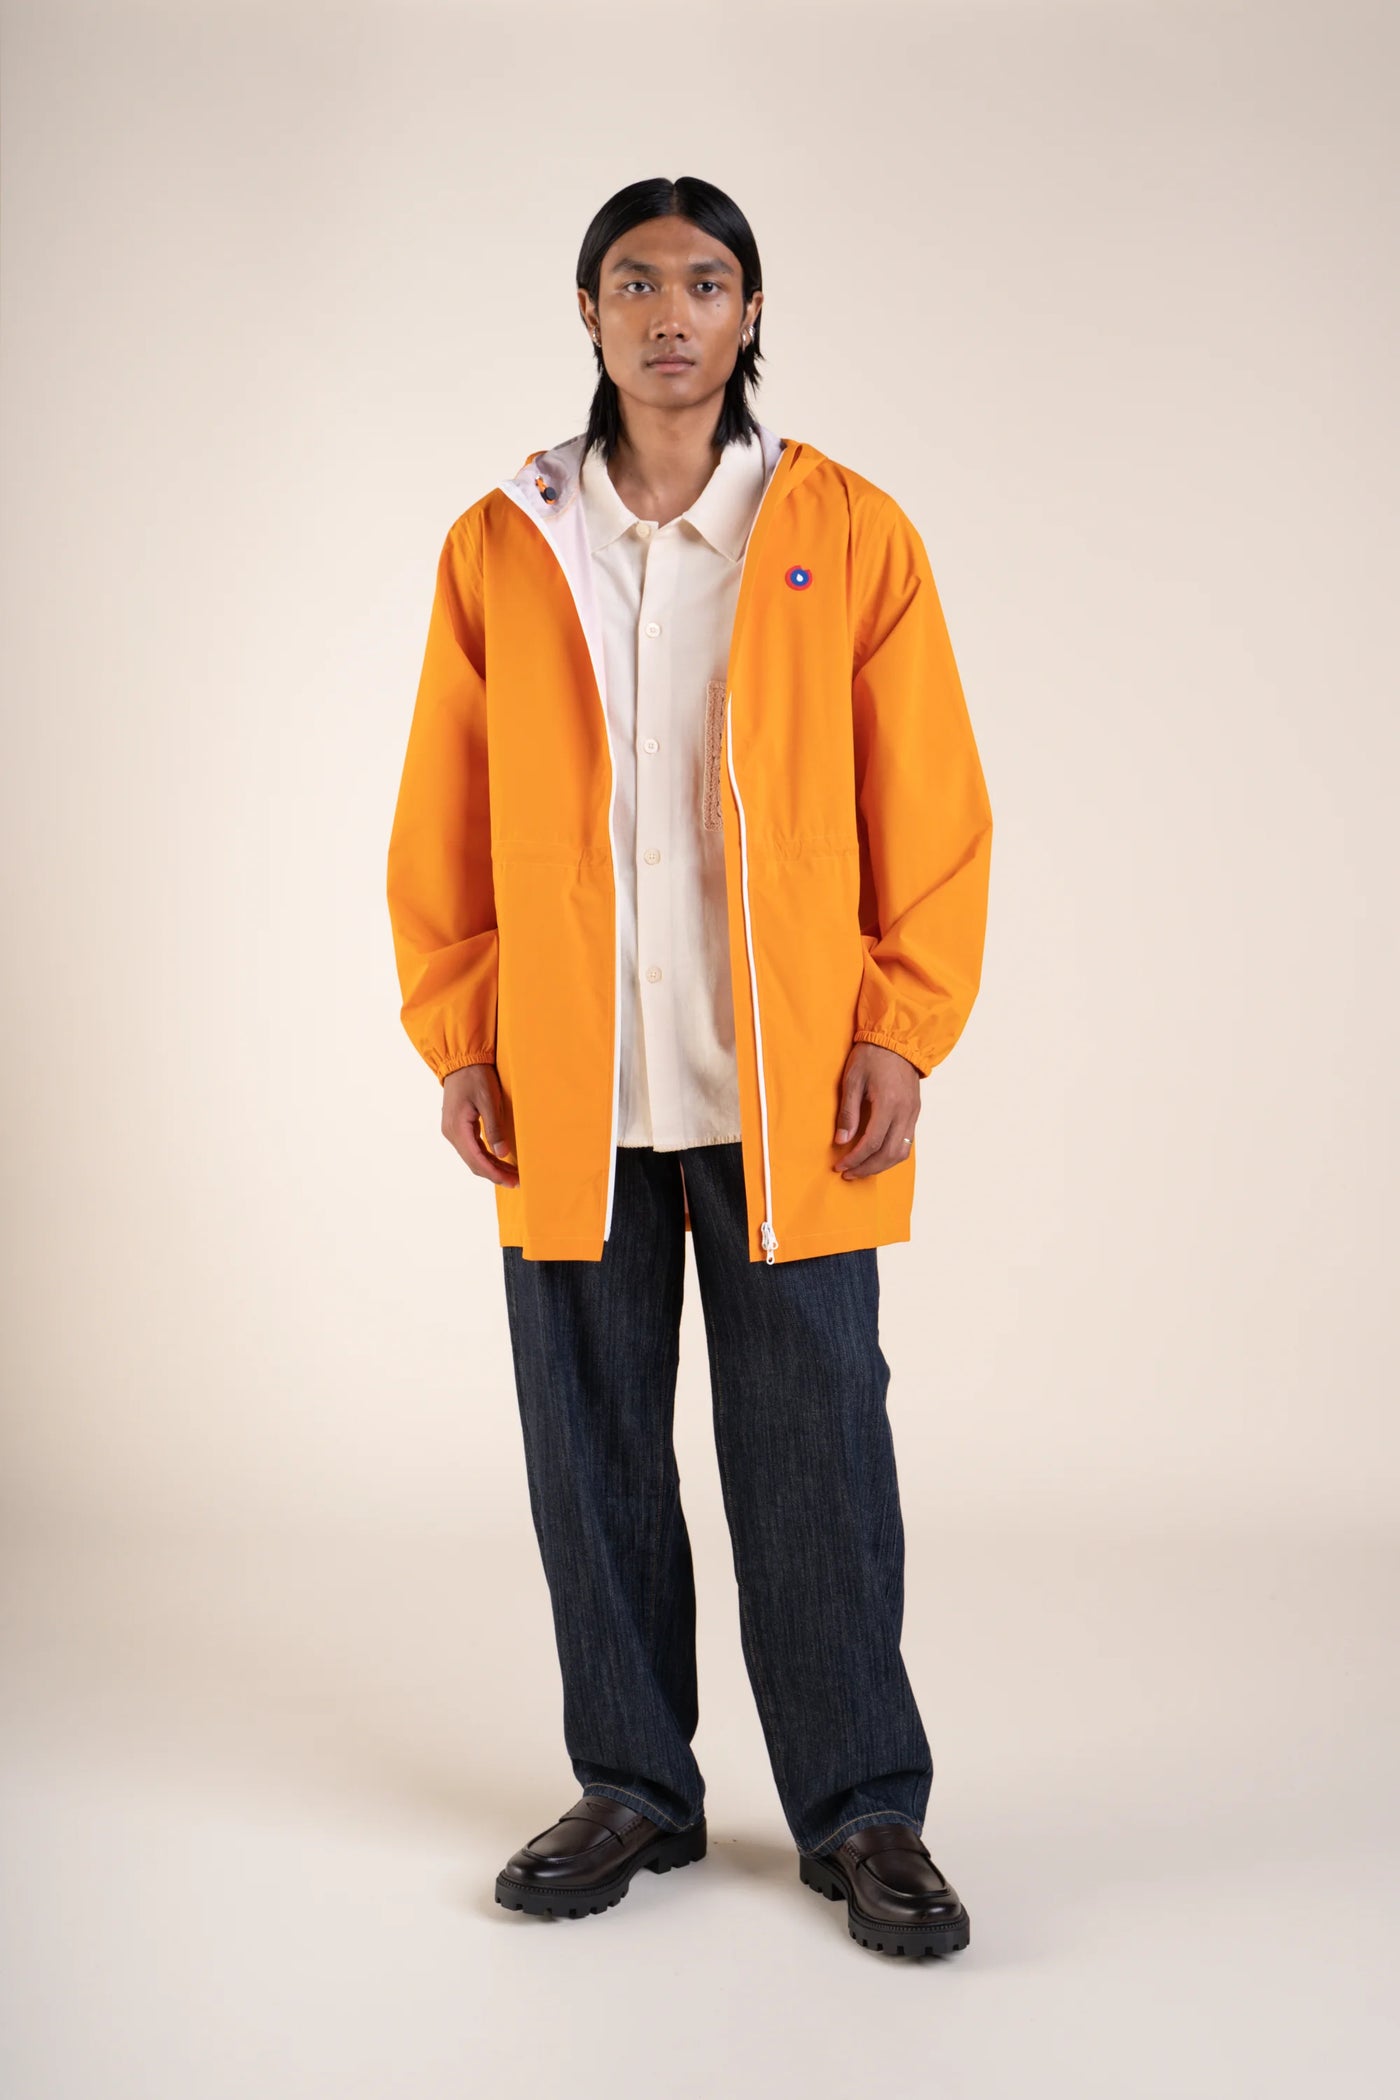 Amelot Couleur - Raincoat Long - Flotte #couleur_abricot